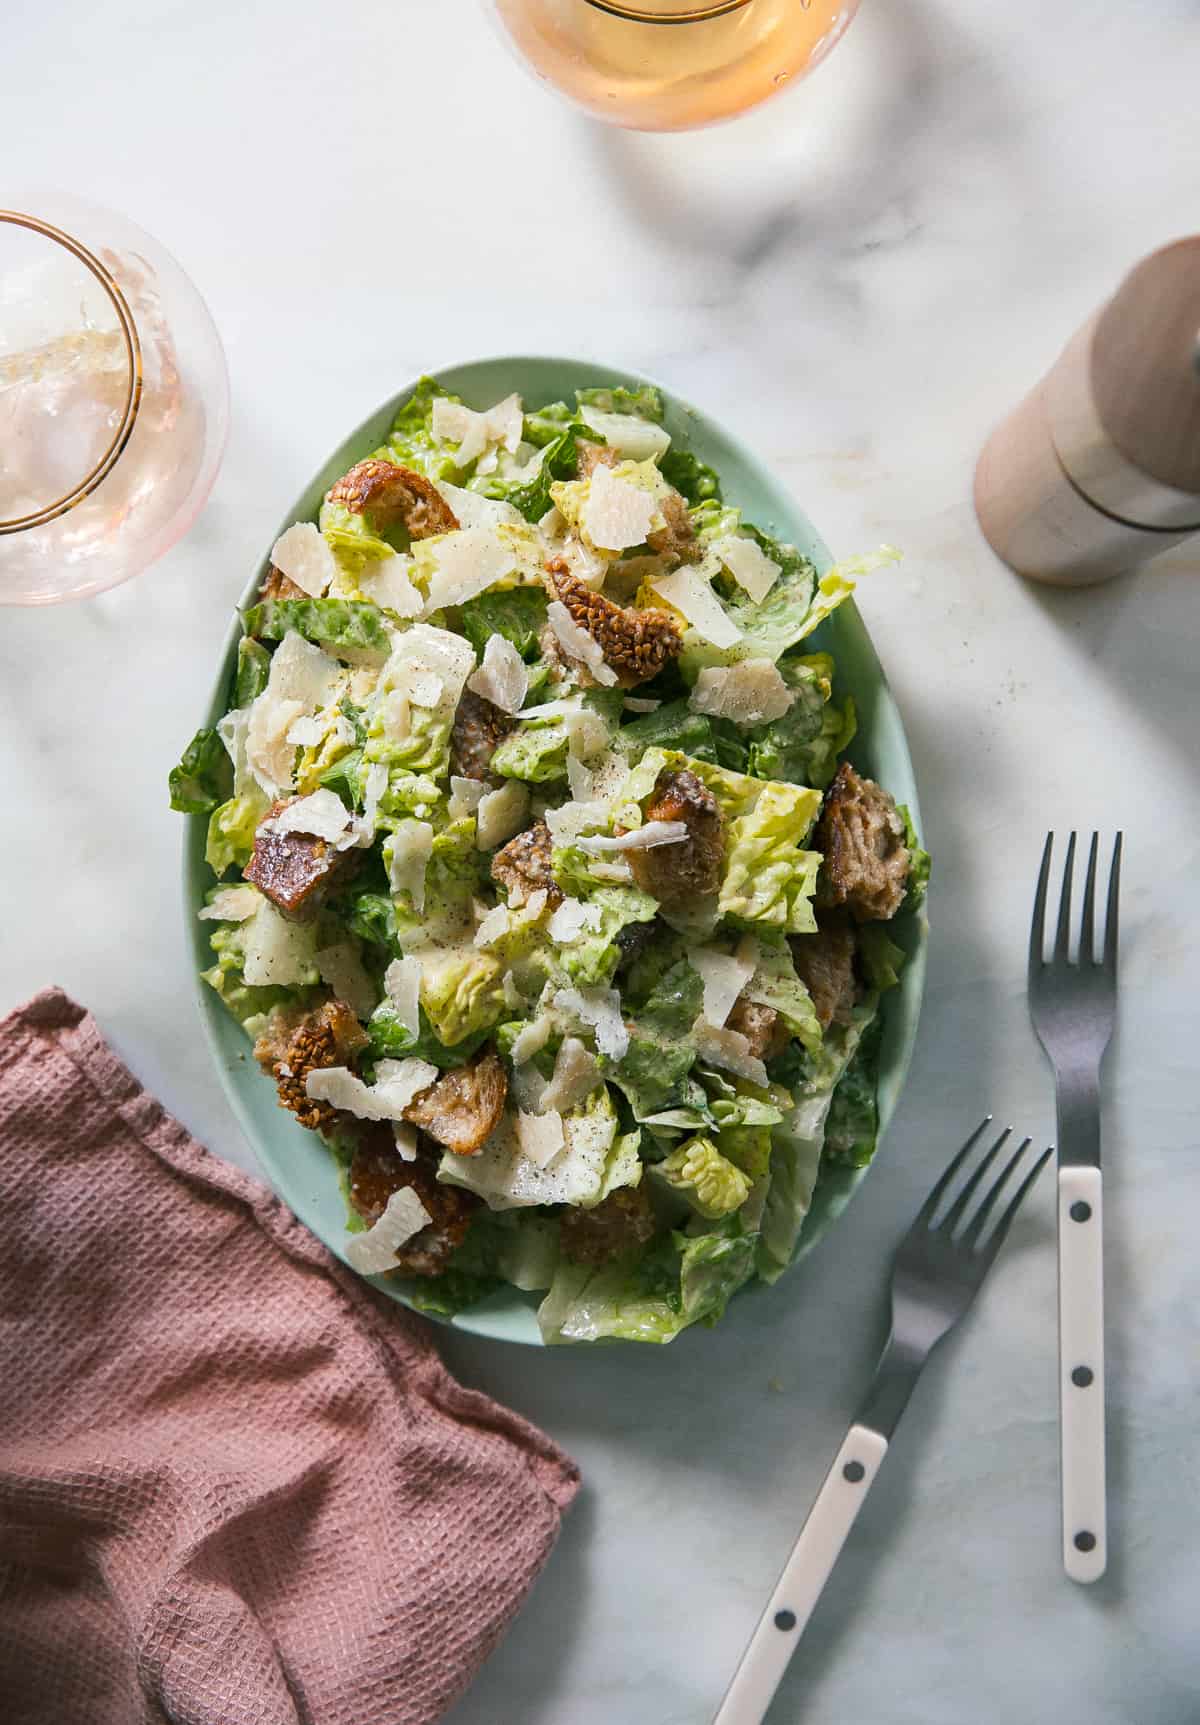 Best Caesar Salad